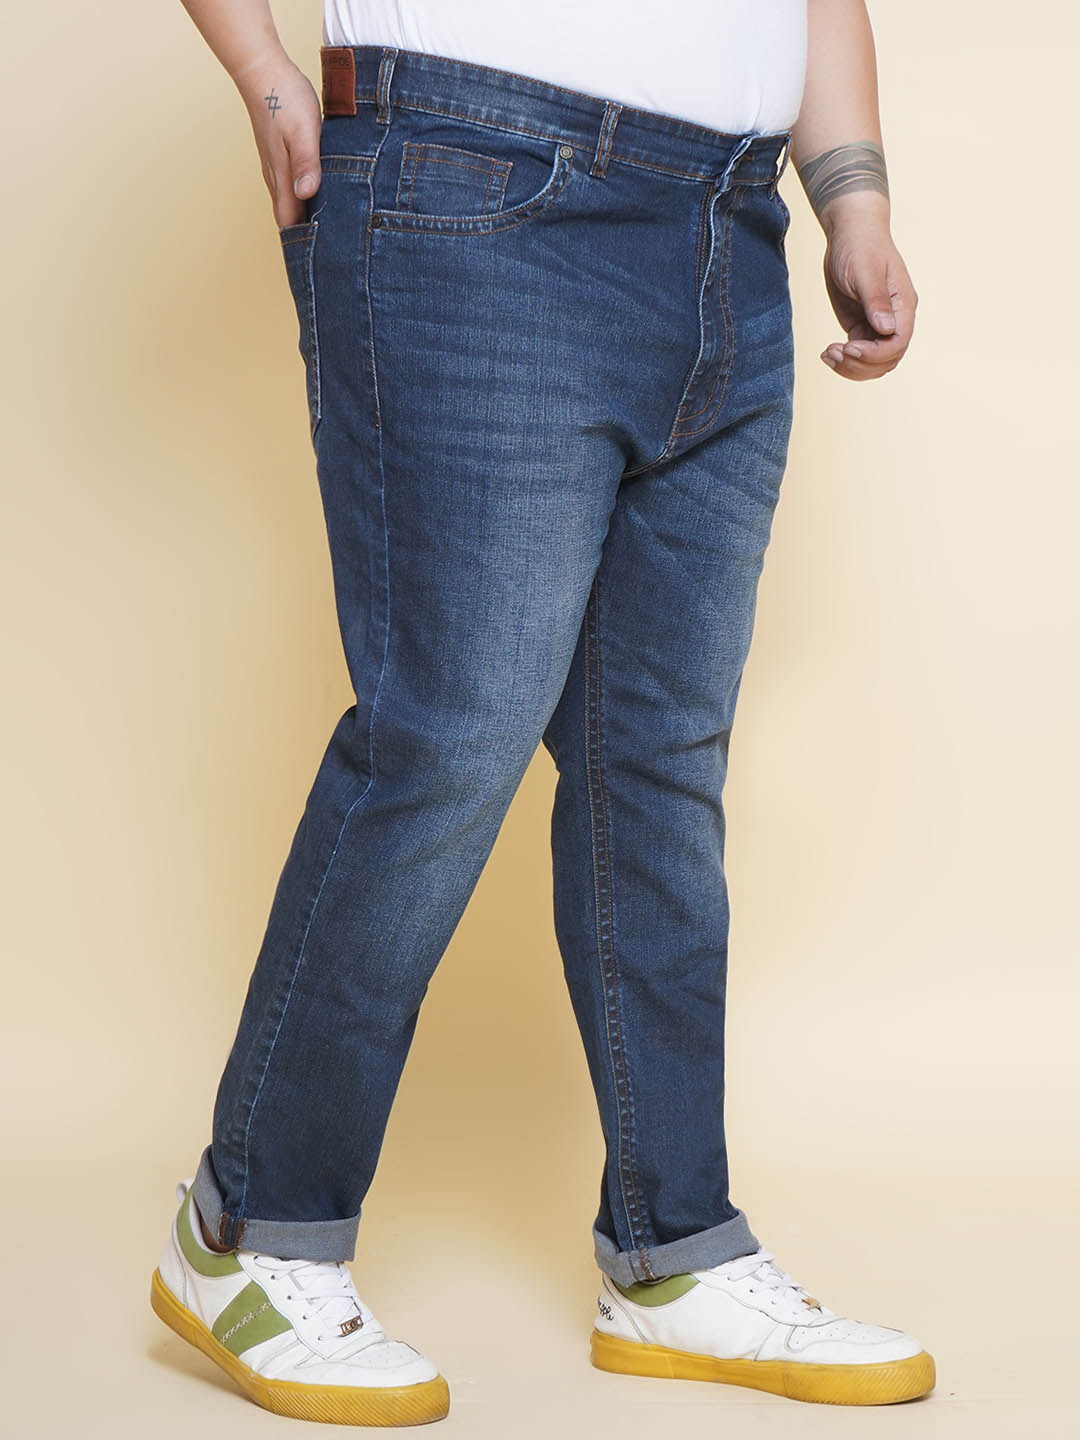 bottomwear/jeans/JPJ12401/jpj12401-3.jpg